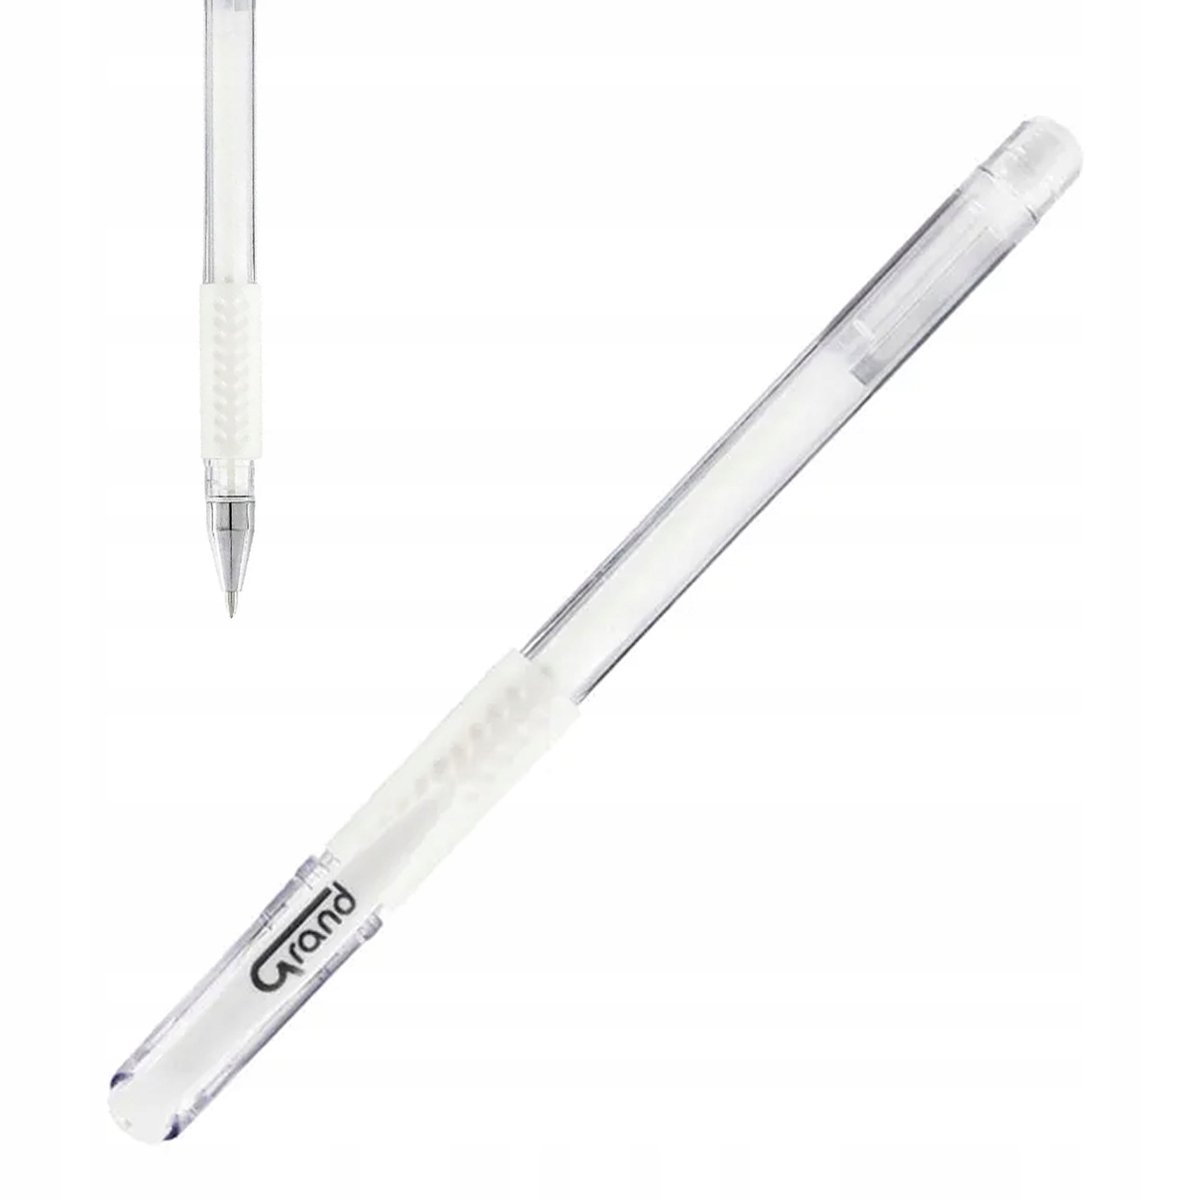 Grand Długopis żelowy GR-101 0.5mm biały 12szt